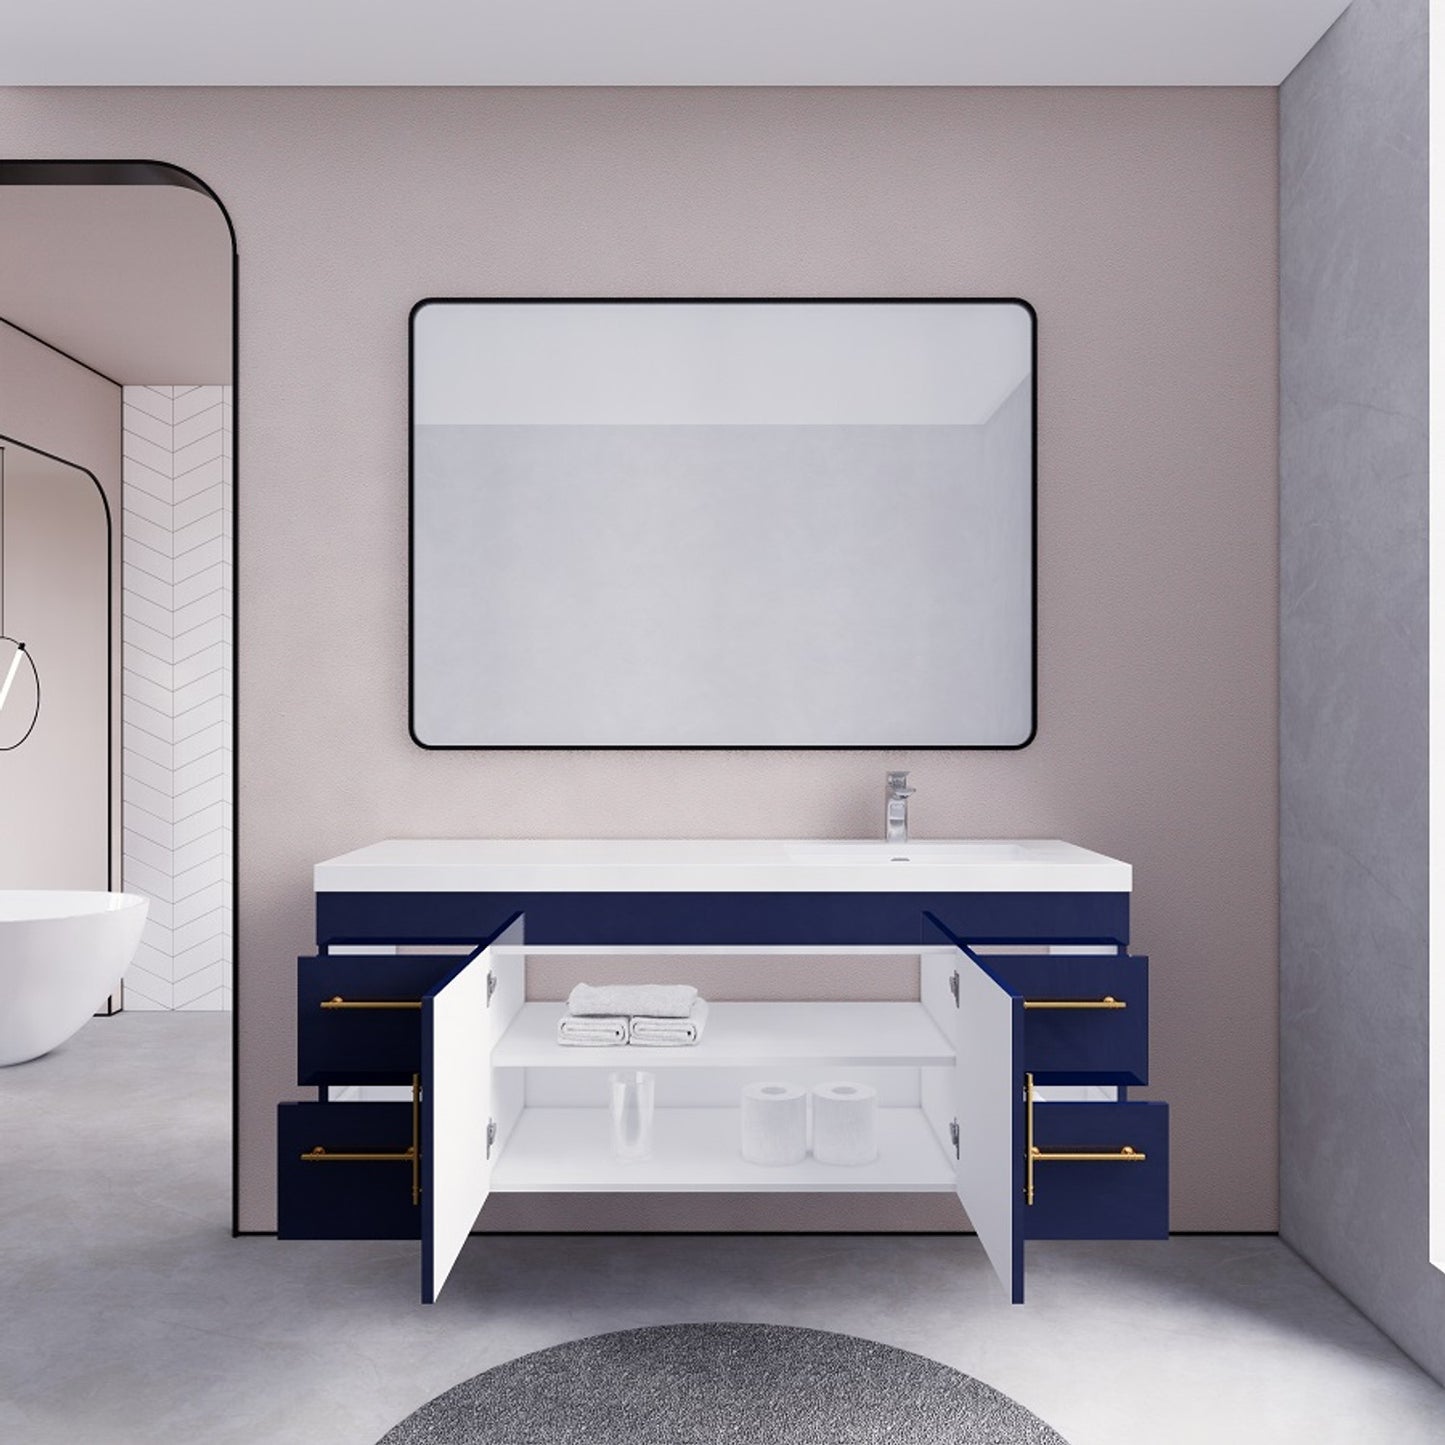 Elsa 60" Wall Mounted Bathroom Vanity with Reinforced Acrylic Sink